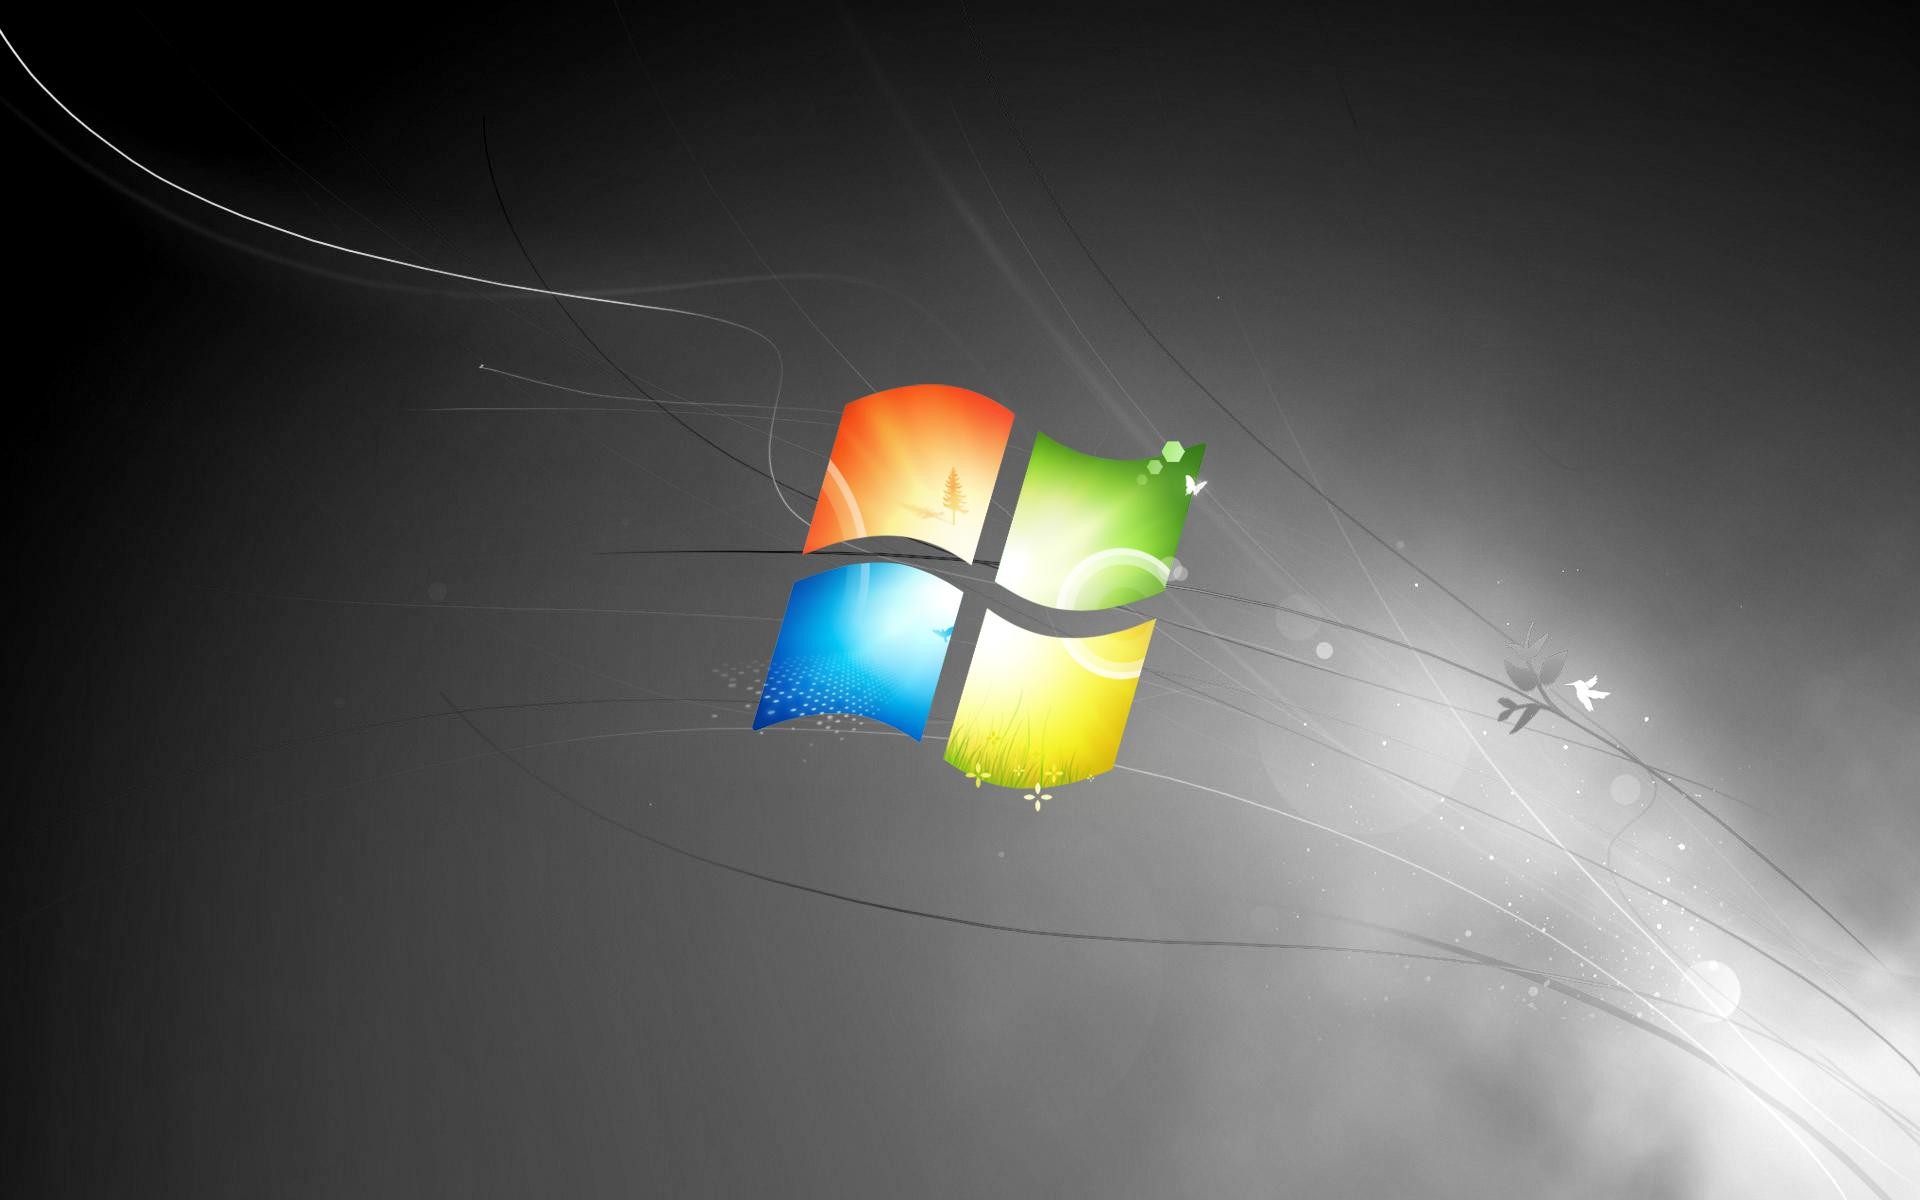 Đừng bỏ lỡ cơ hội được thưởng thức hình nền Windows 7 đen tuyệt đẹp này. Với sự tối giản và tinh tế, hình nền Windows 7 đen sẽ mang lại cho máy tính của bạn vẻ đẹp đầy mạnh mẽ và sắc sảo.